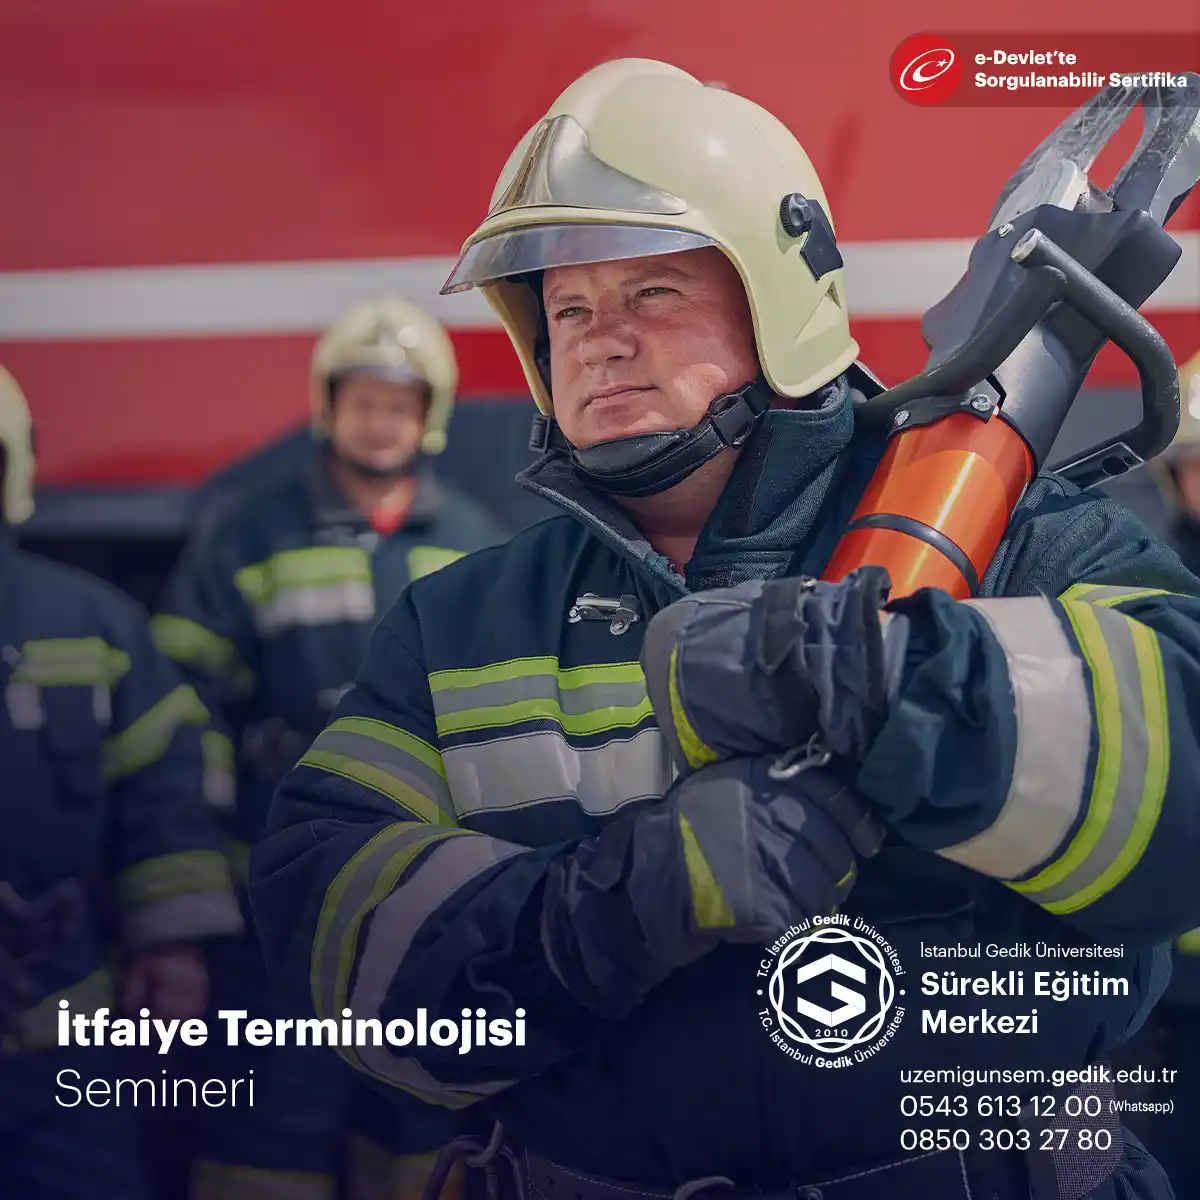 İtfaiye terminolojisi, yangınla mücadele ekiplerinin kullanılan terimleri ve kavramları ifade eder.